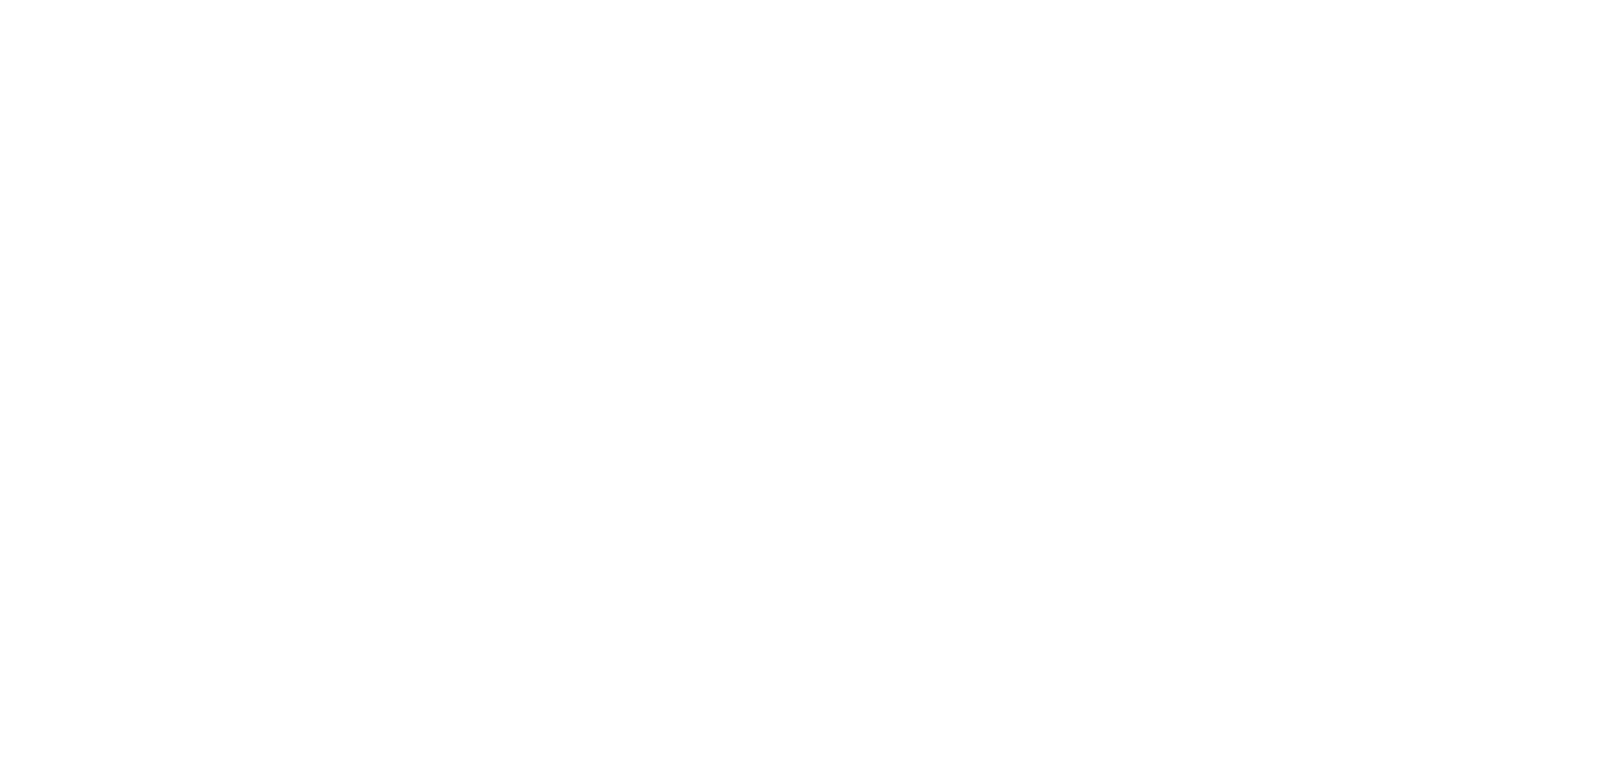 Redcat_The_Hospitality_IT_Platform_Logo_2019_White-1